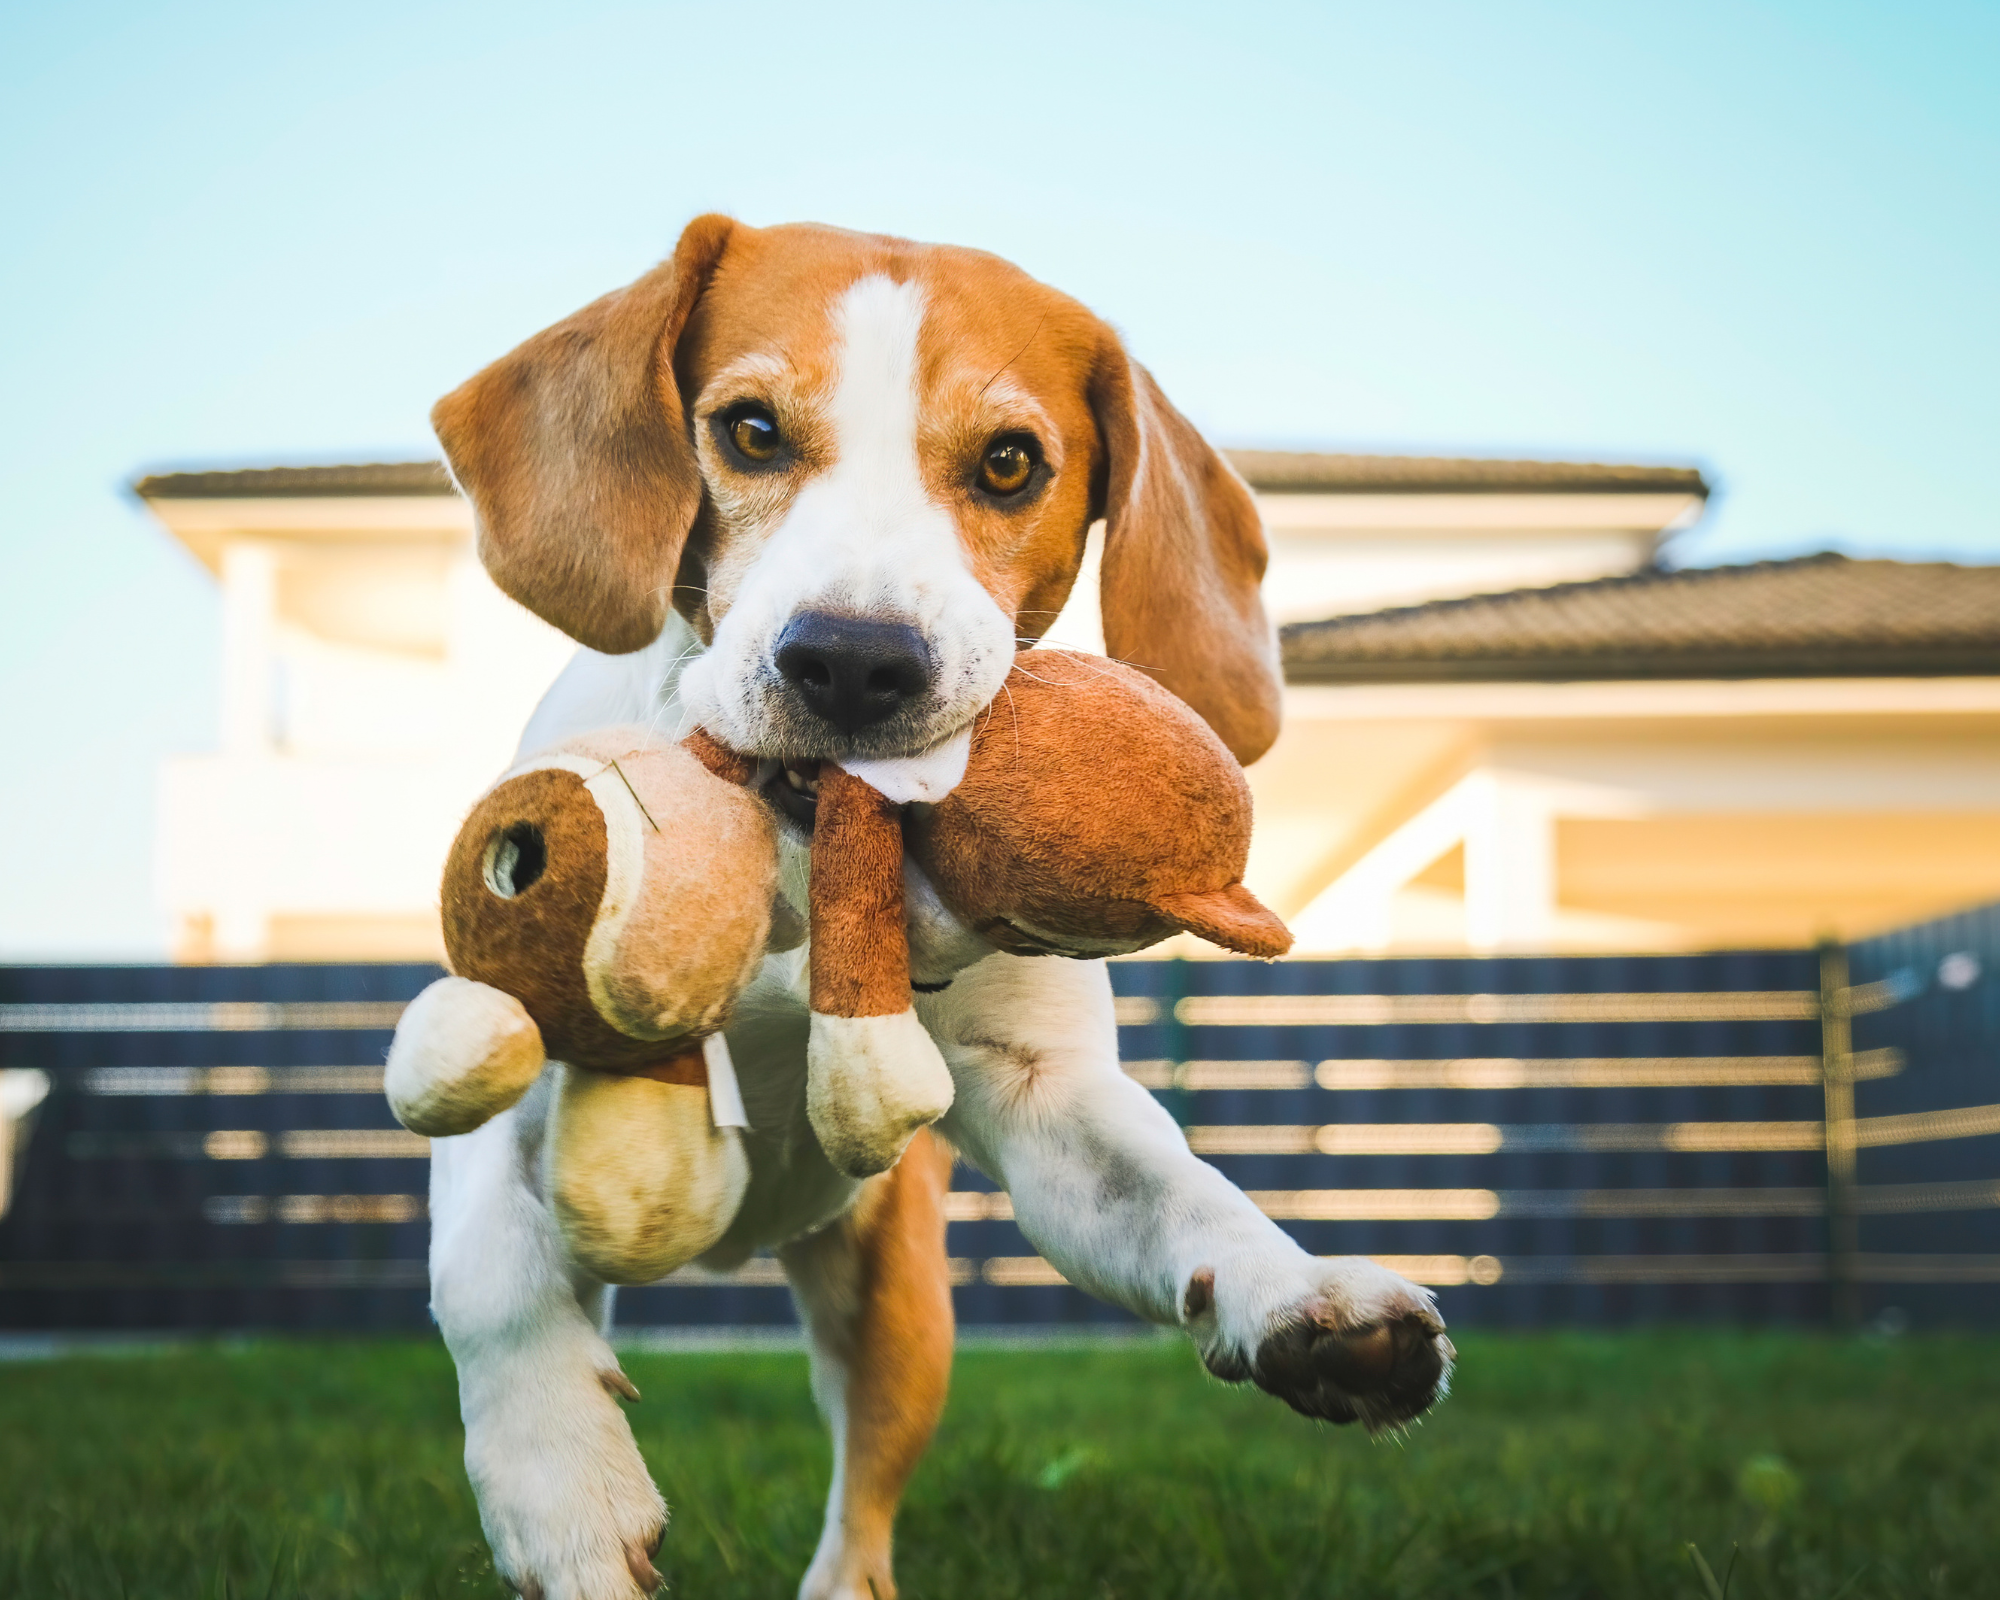 13 Misverstanden over jachthonden   Jachthonden mogen niet met speeltjes spelen